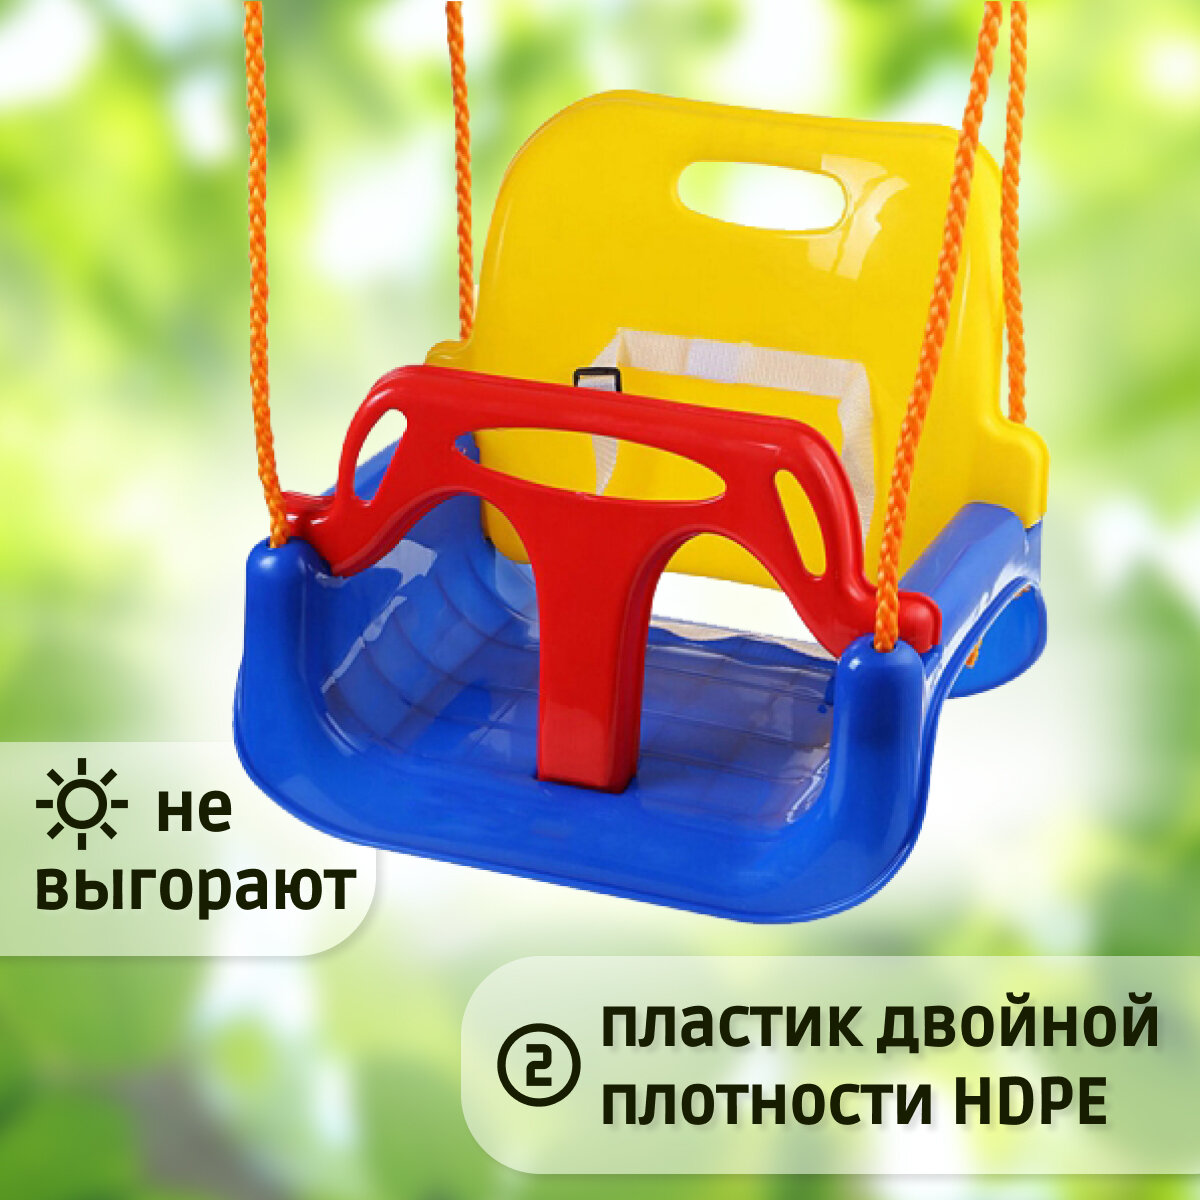 Детские качели кресло Капризун 3 в 1. Подвесные качели трансформер для улицы и дома, цвет красный, желтый, синий